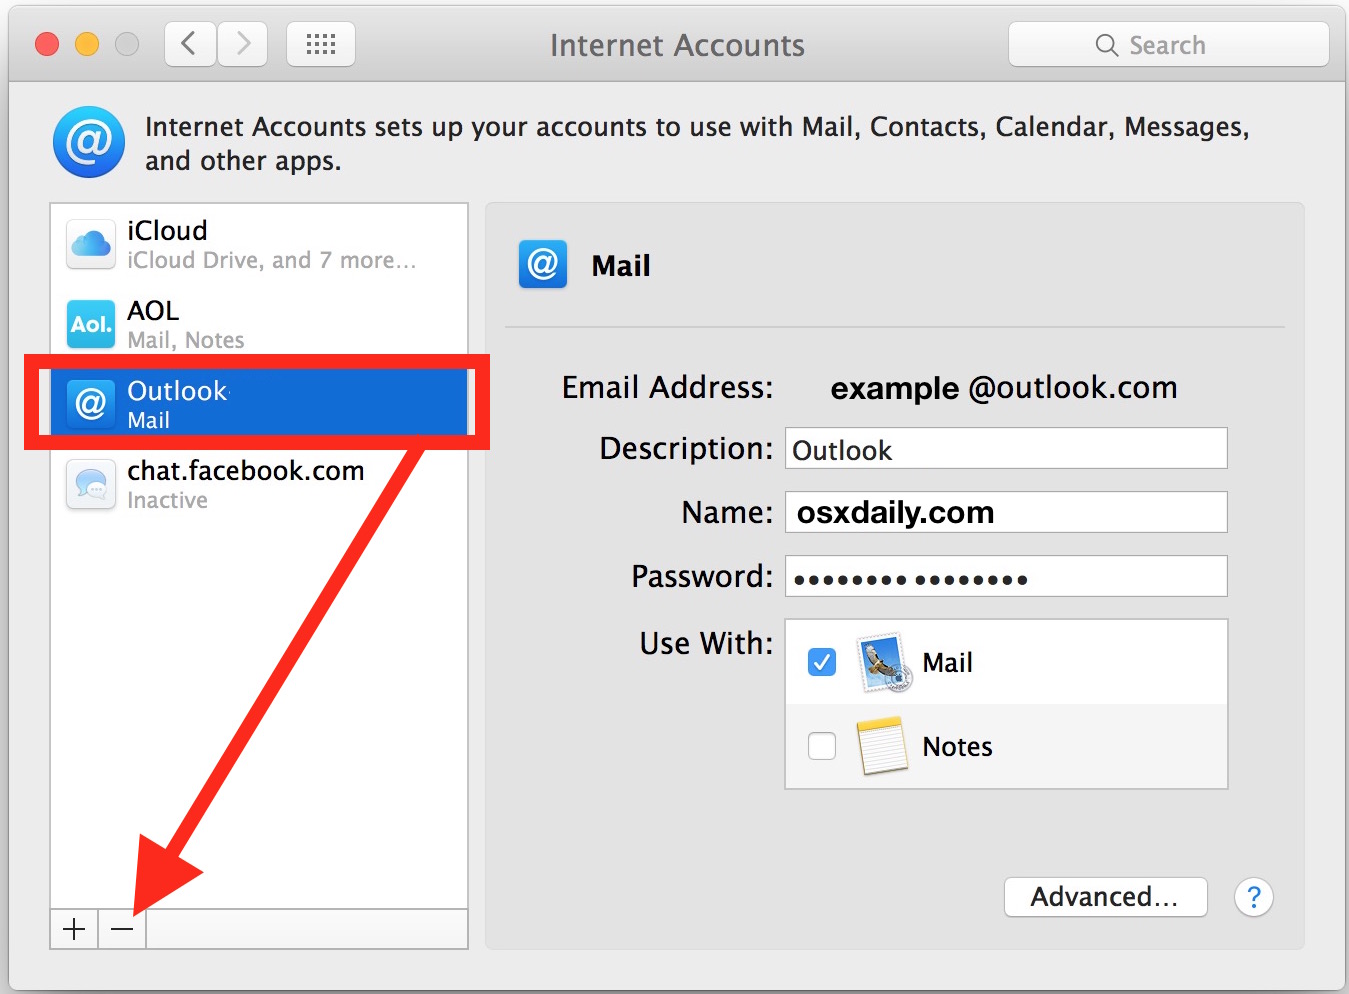 Seleccione y elimine la cuenta de correo electrónico en cuestión de sus cuentas de Internet de Mac OS X